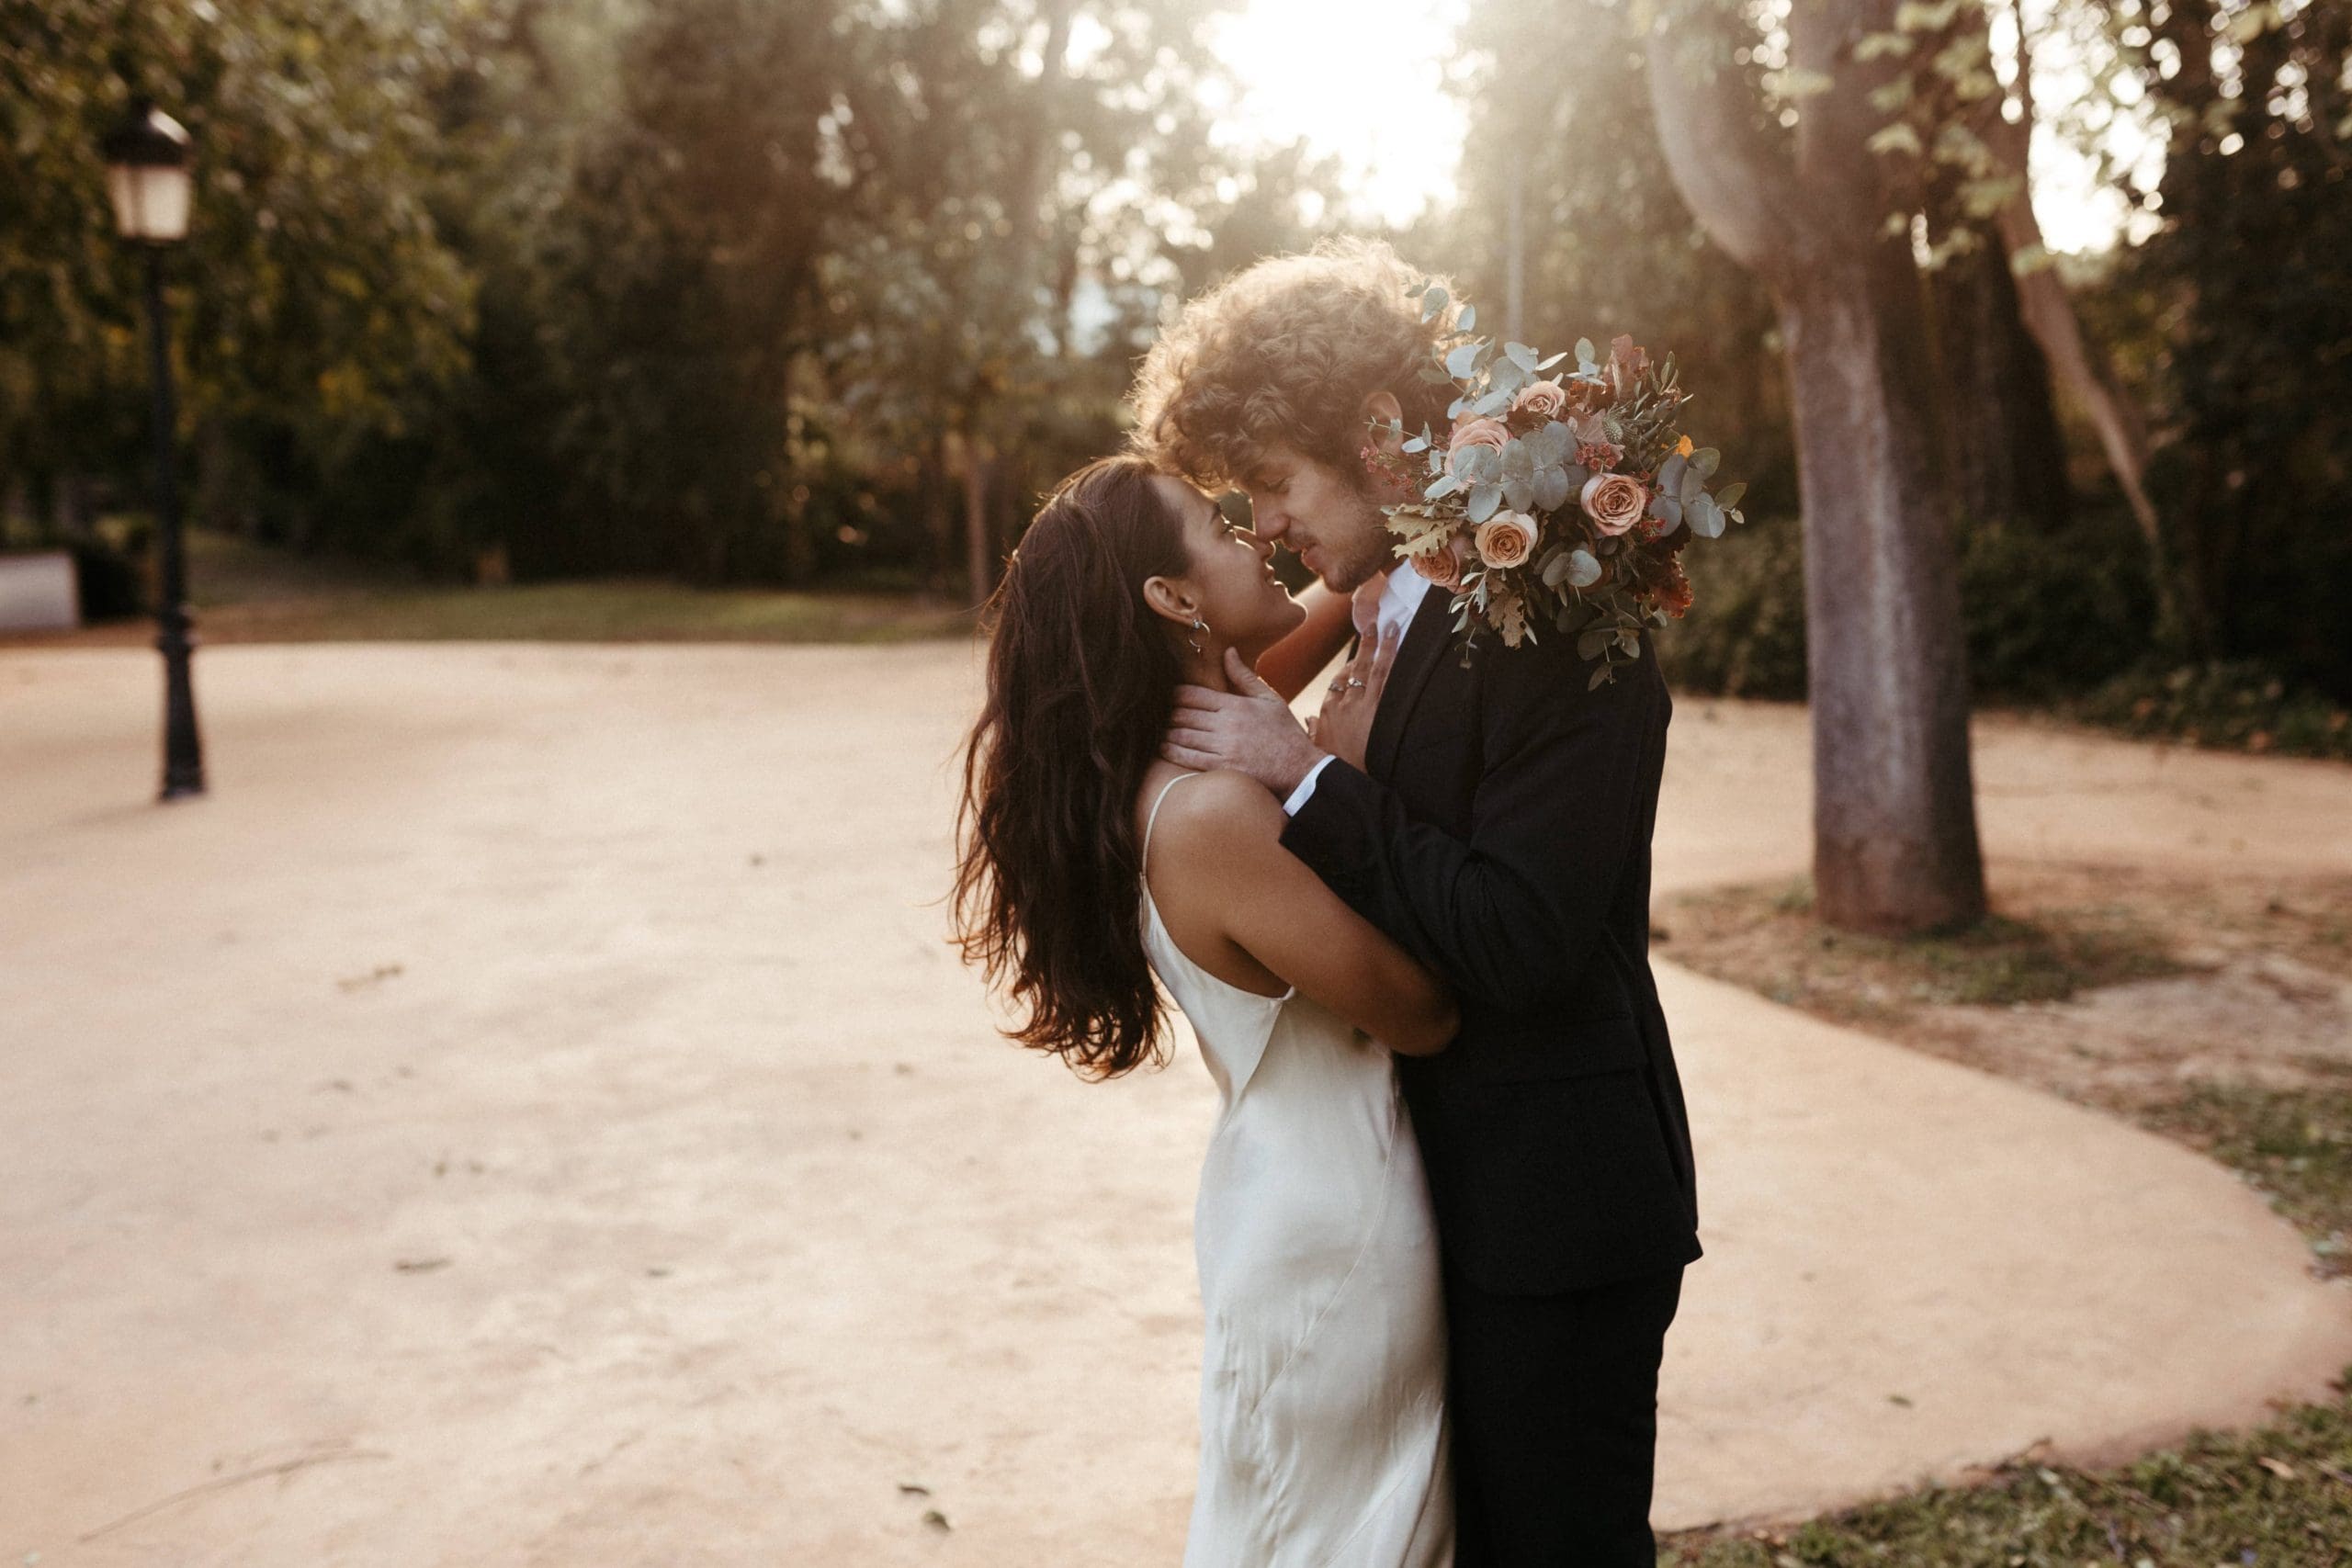 Pareja de novios besándose al atardecer en un paraje natural con árboles, con la novia sosteniendo su ramo de novia, creando una escena romántica.